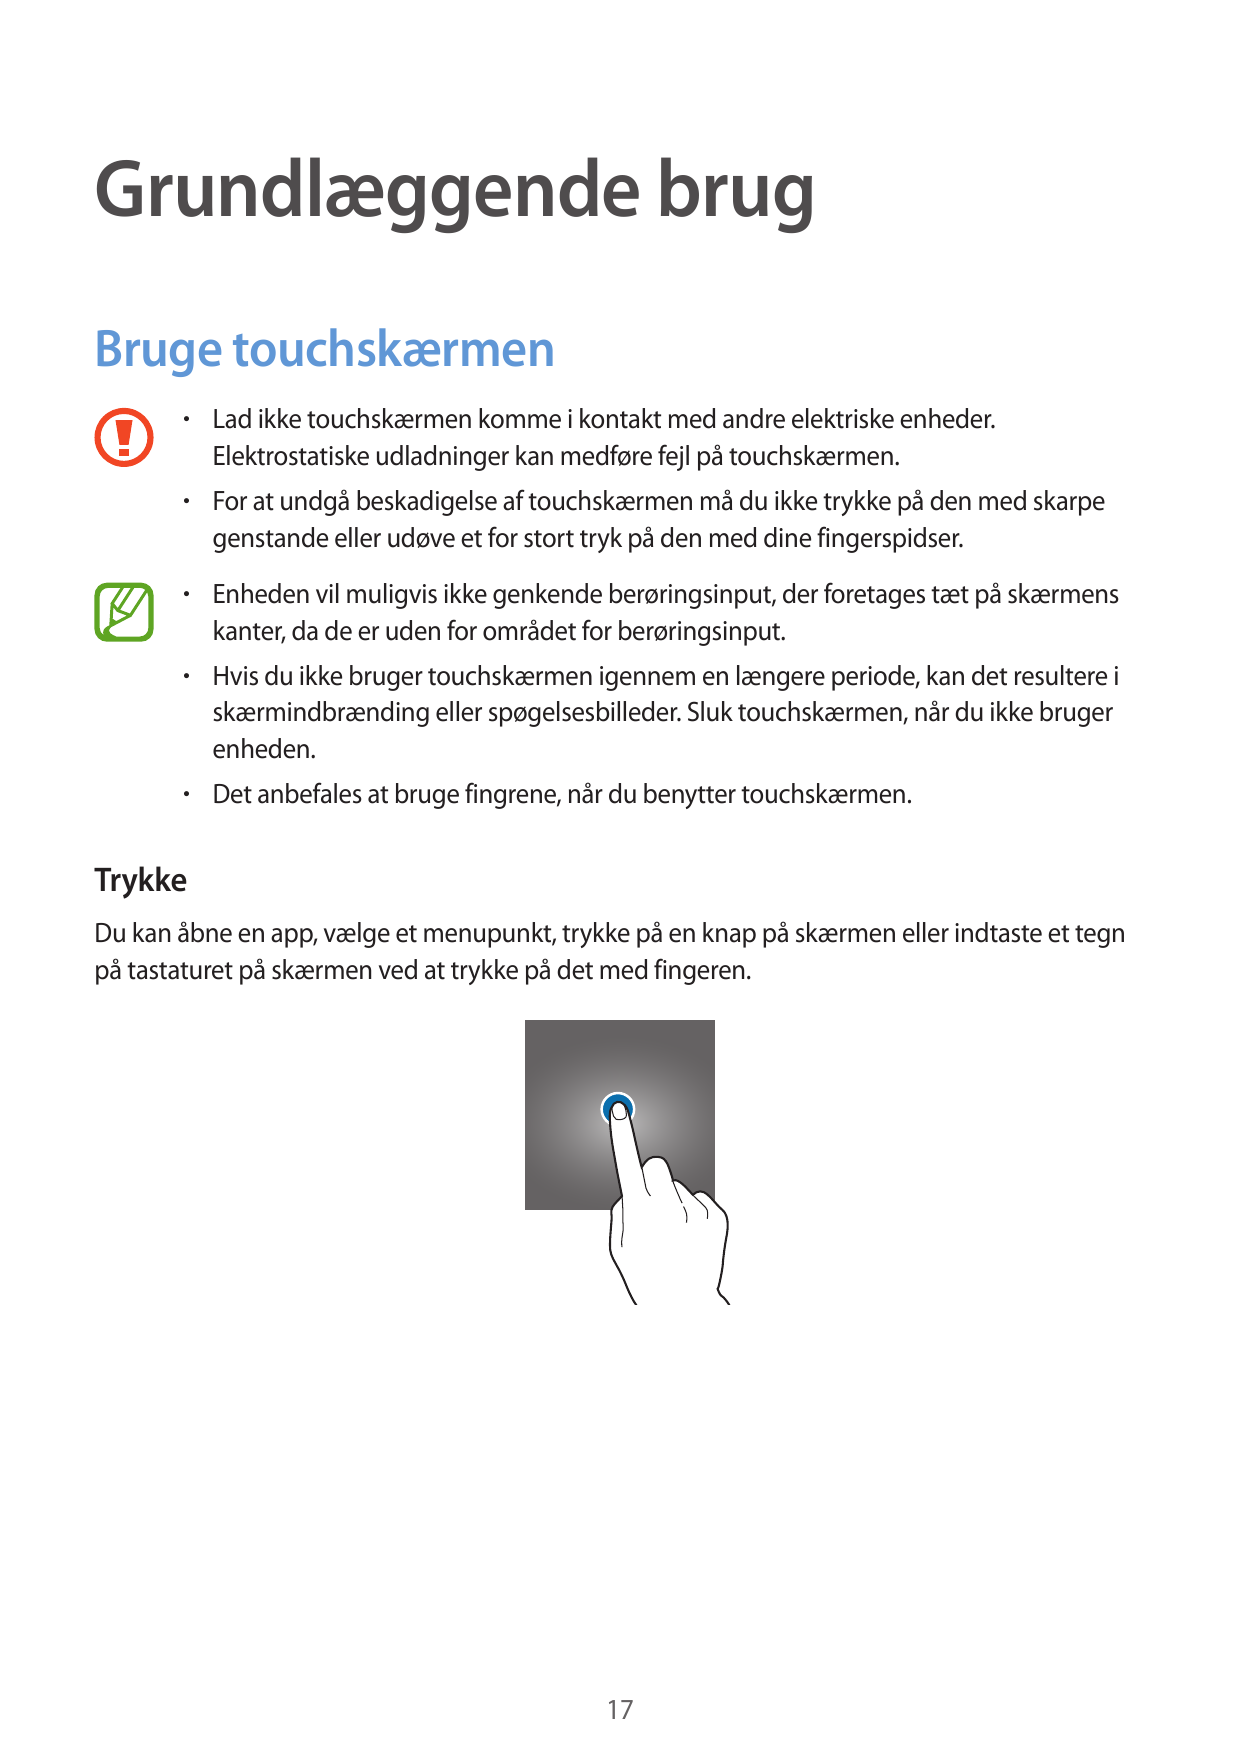 Grundlæggende brugBruge touchskærmen• Lad ikke touchskærmen komme i kontakt med andre elektriske enheder.Elektrostatiske udladni